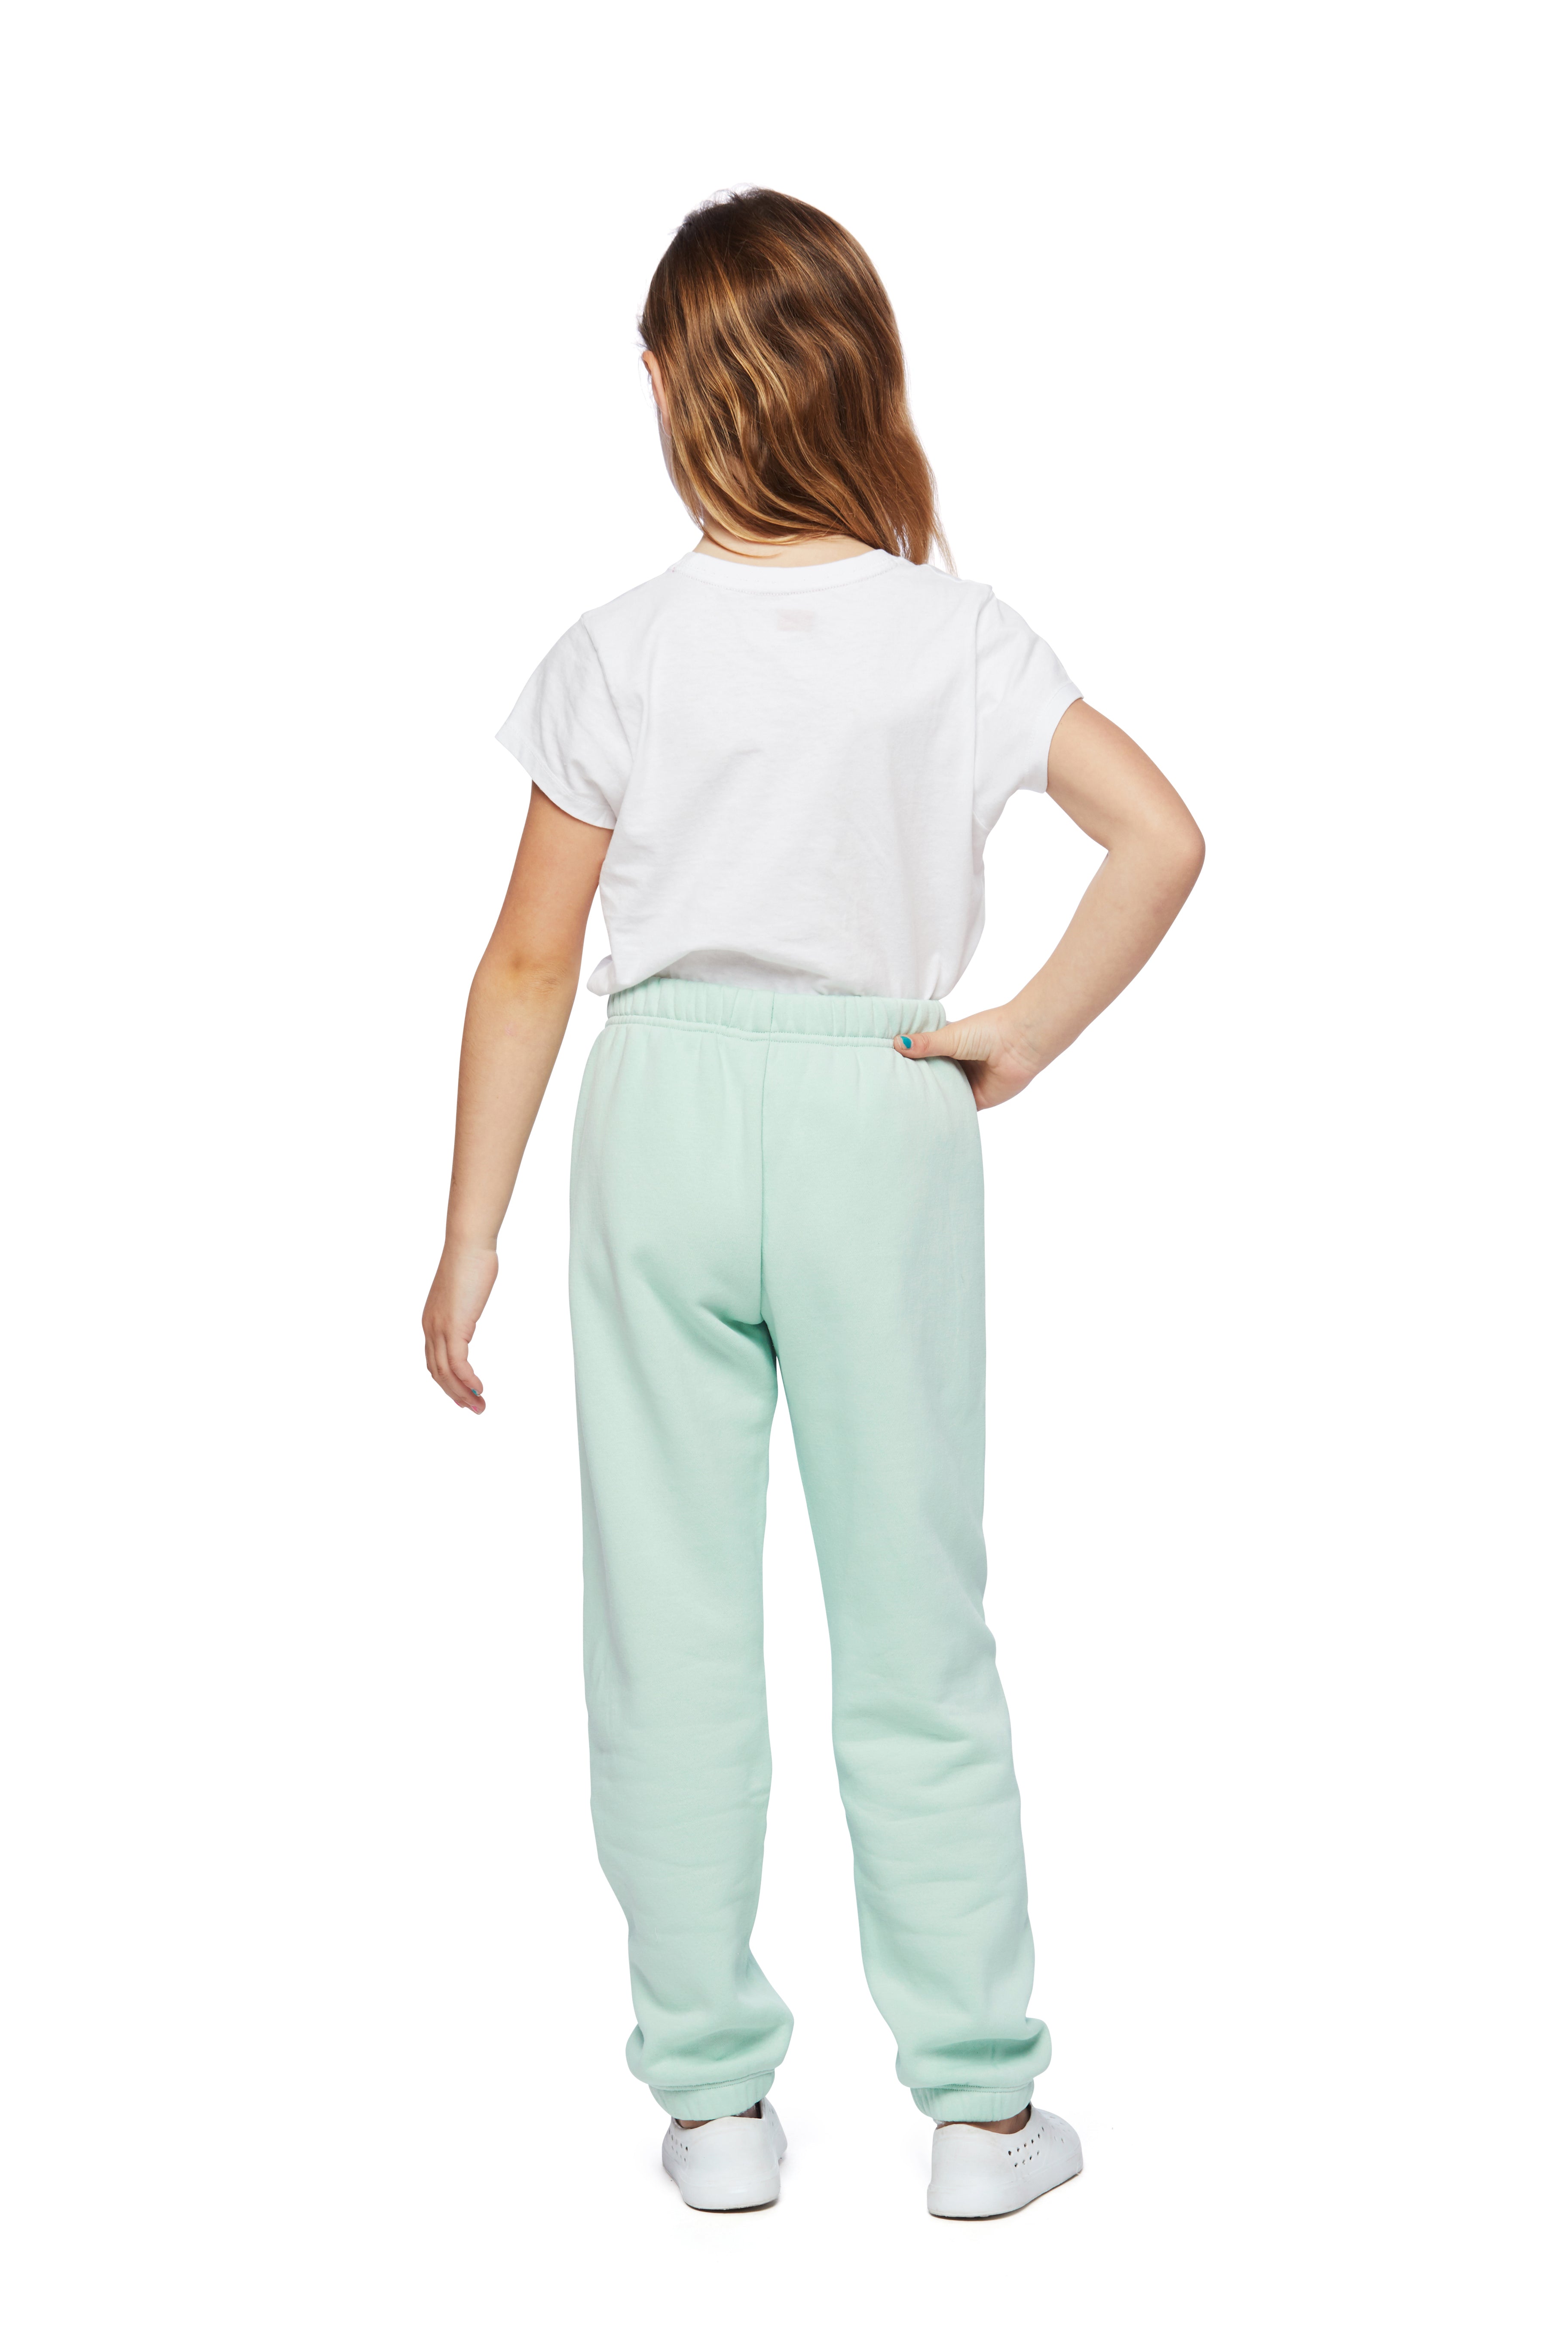 Niki Original pantalon de survêtement pour enfants à la menthe